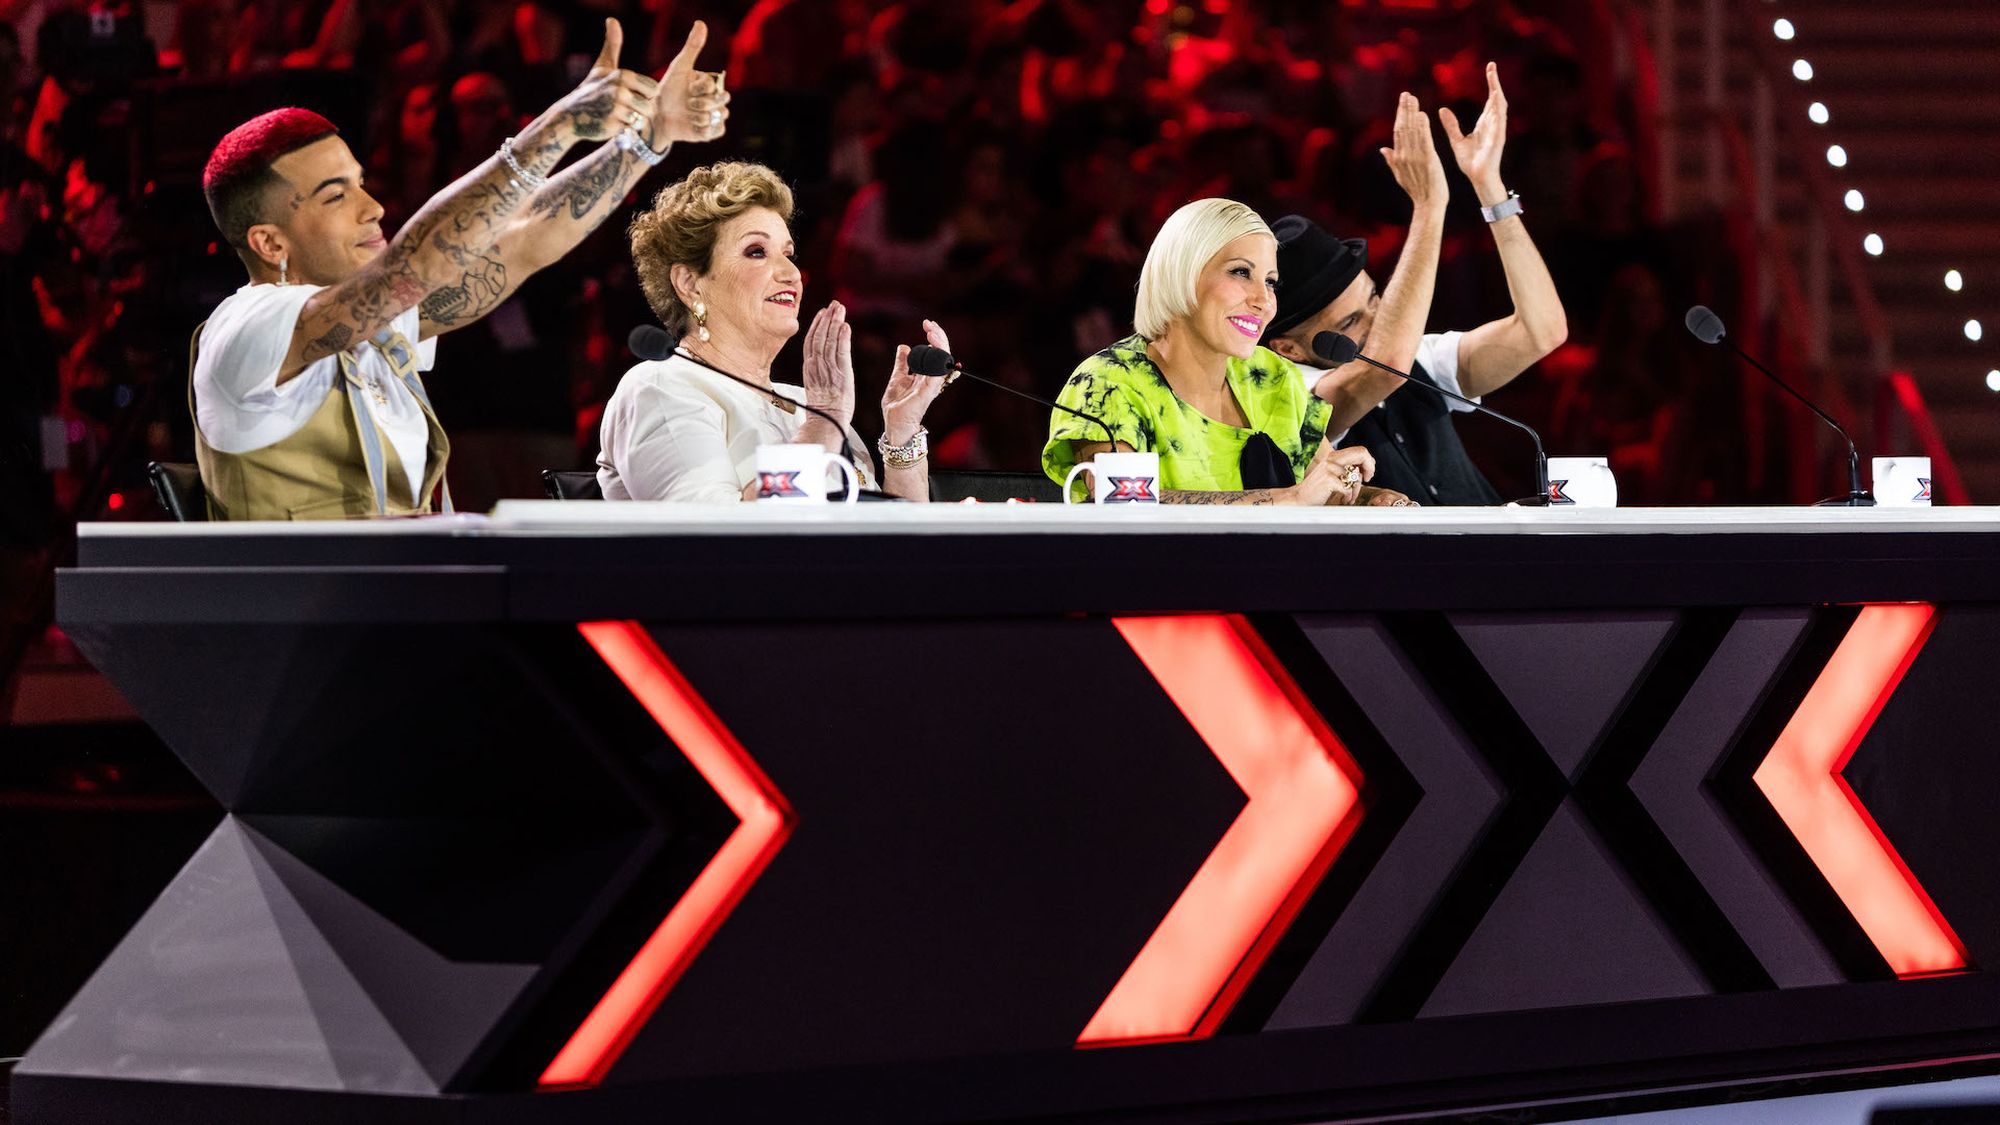 Finale X Factor 2019: vinci i biglietti con TikTok